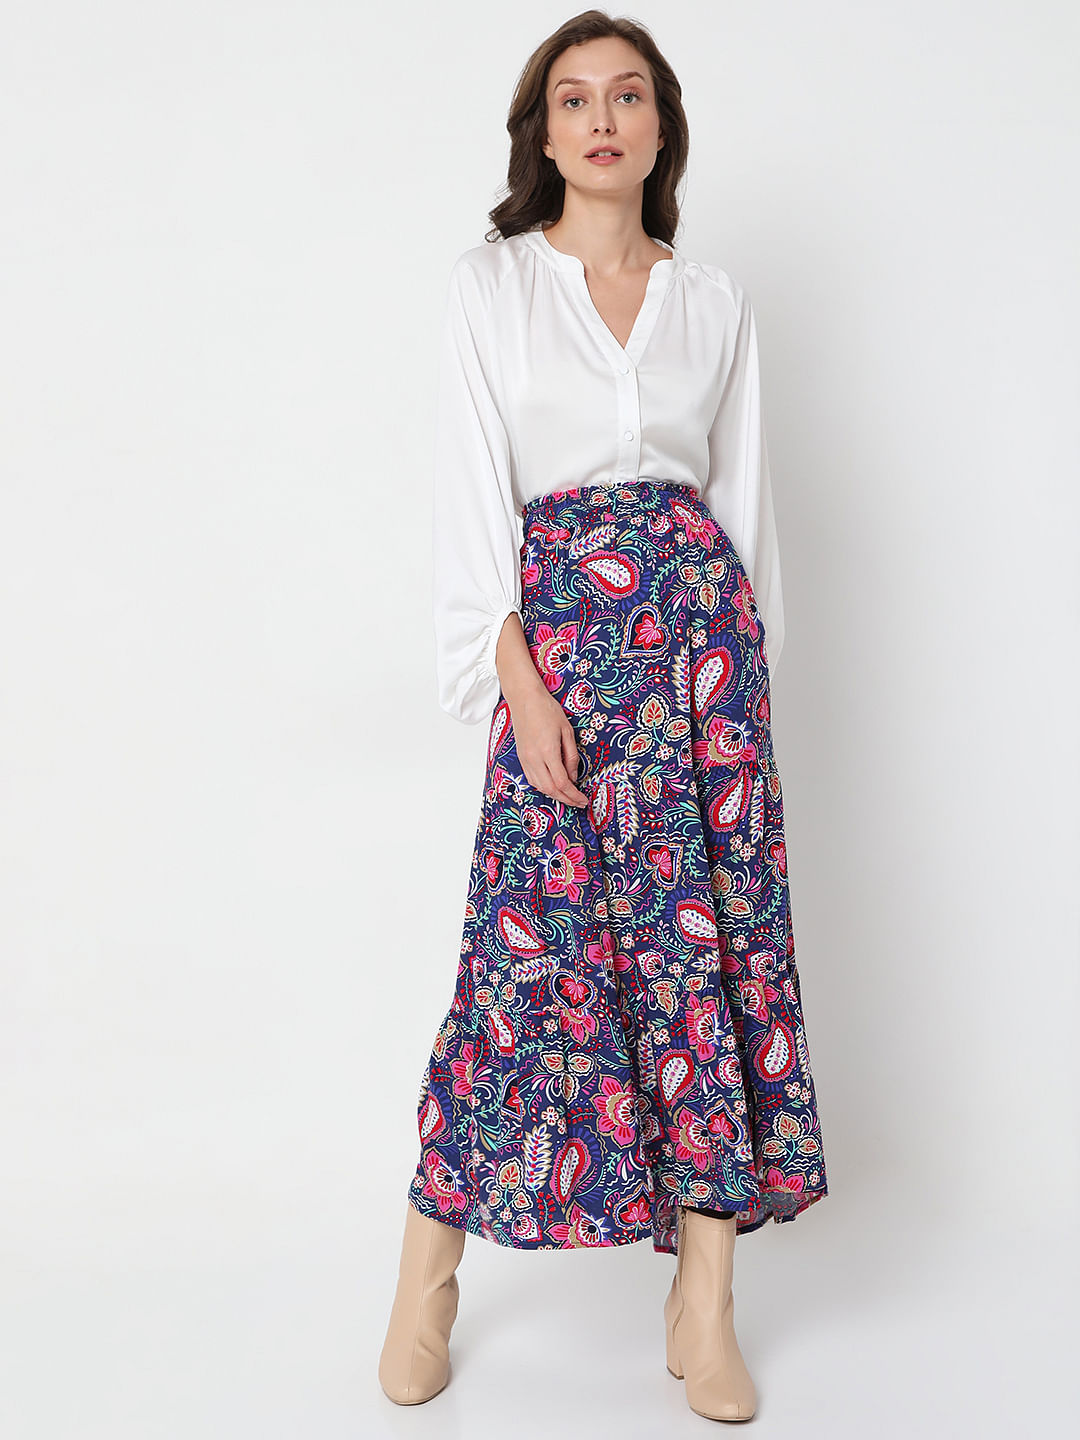 Update 127+ flower print skirt